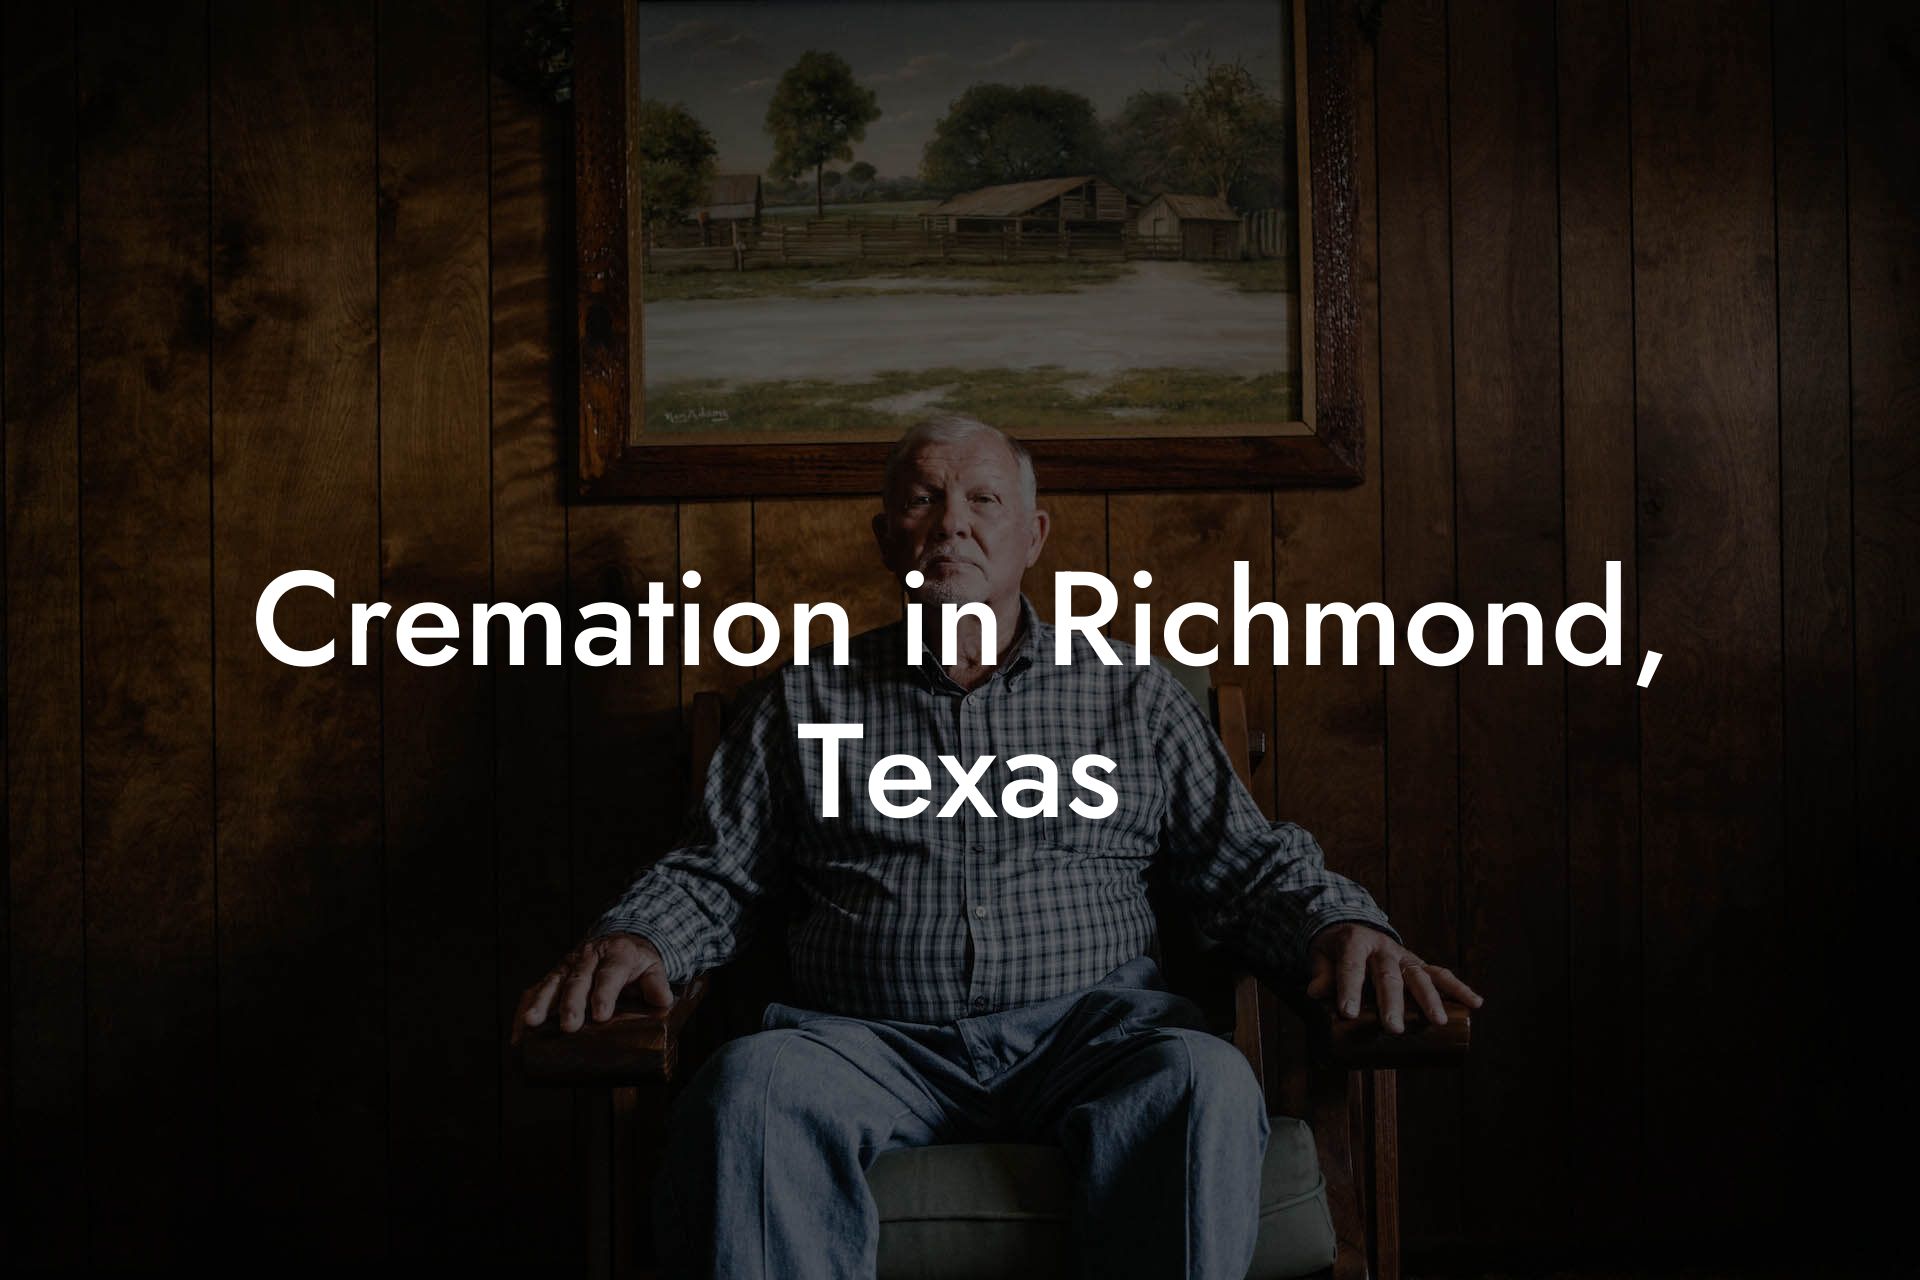 Cremation in Richmond, Texas